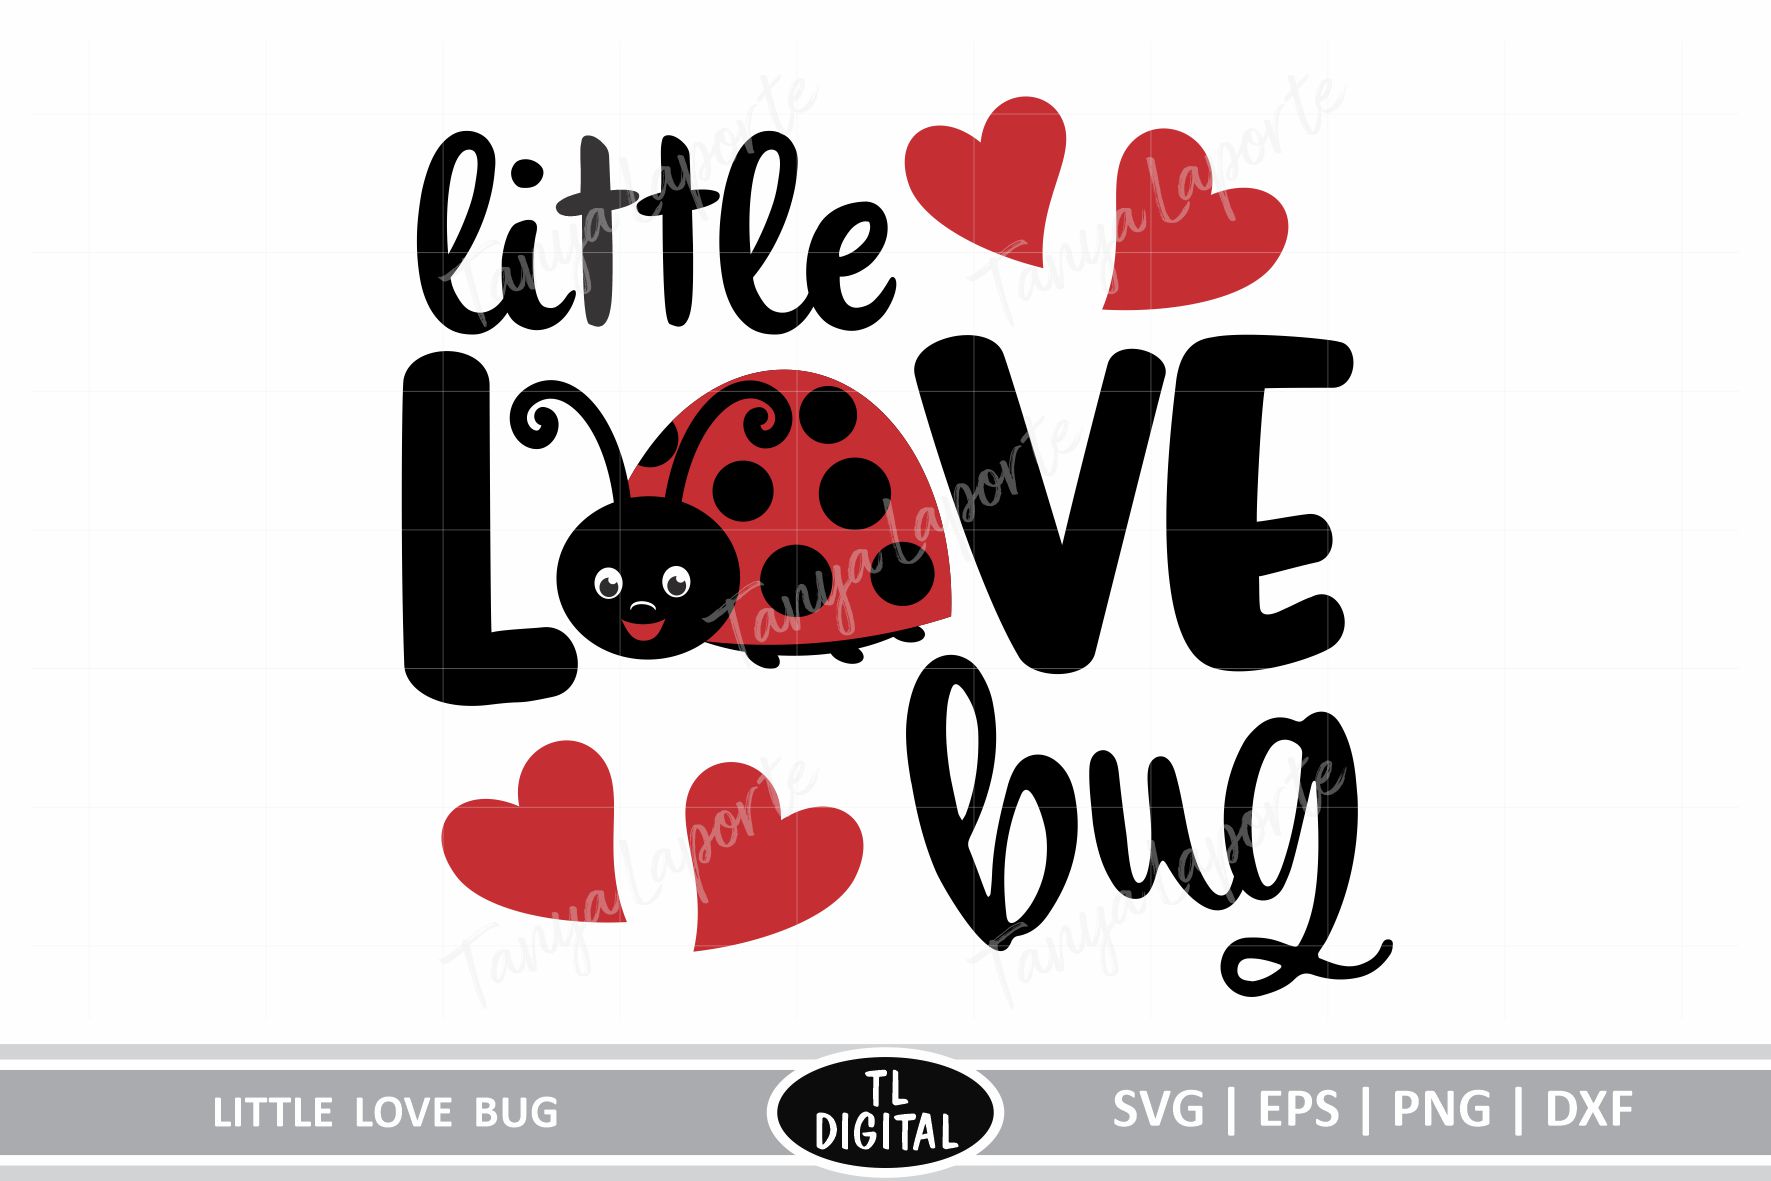 Download Little Love Bug - SVG | EPS | PNG |DXF